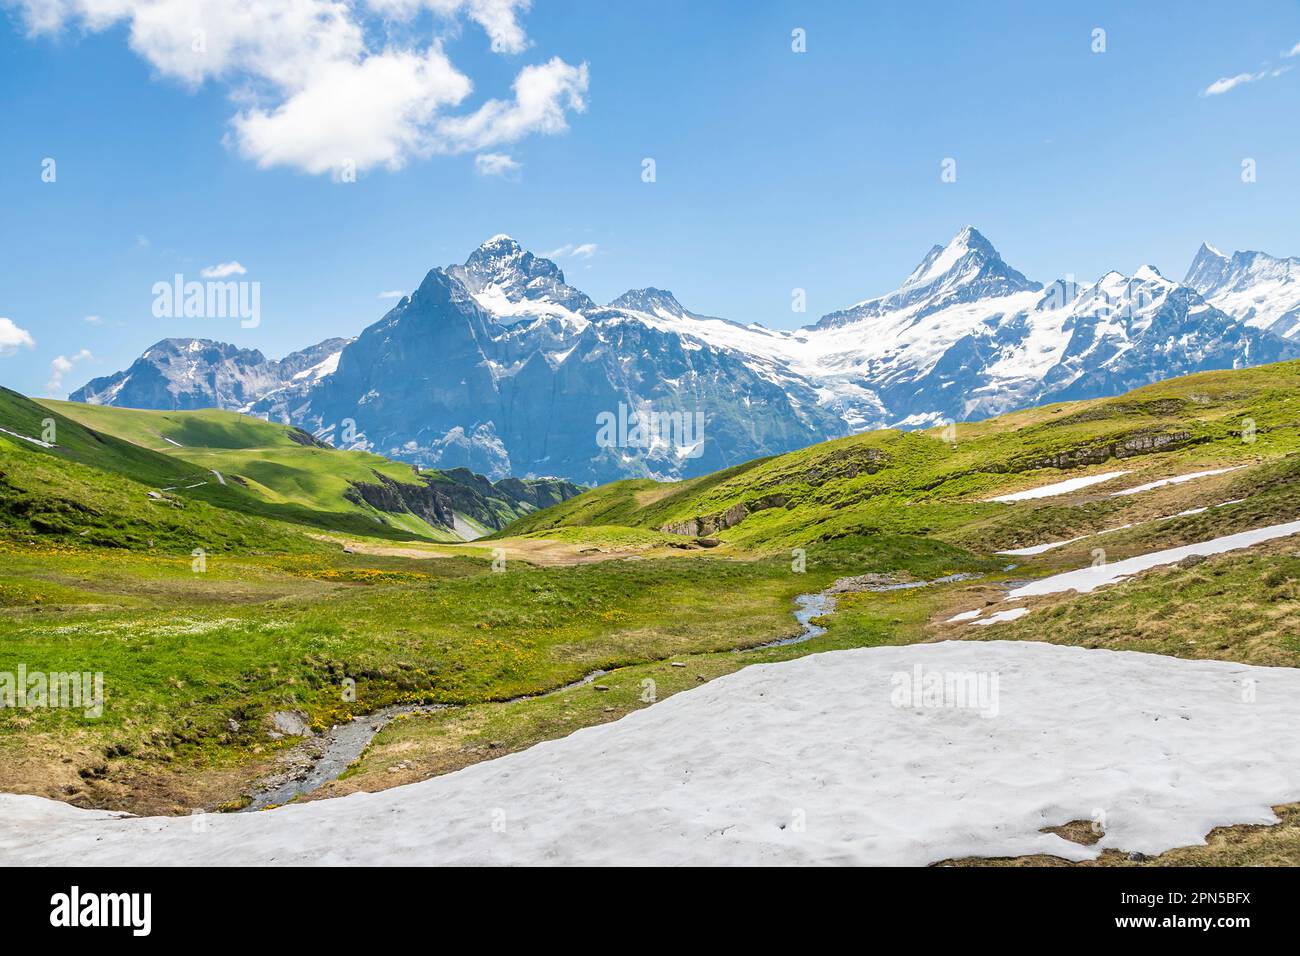 Vista del sentiero nei pressi di Bachalpsee sopra Grindelwald, prima delle montagne di Wetterhorn e Schreckhorn, regione di Jungfrau, Alpi dell'Oberland Bernese, Svizzera Foto Stock